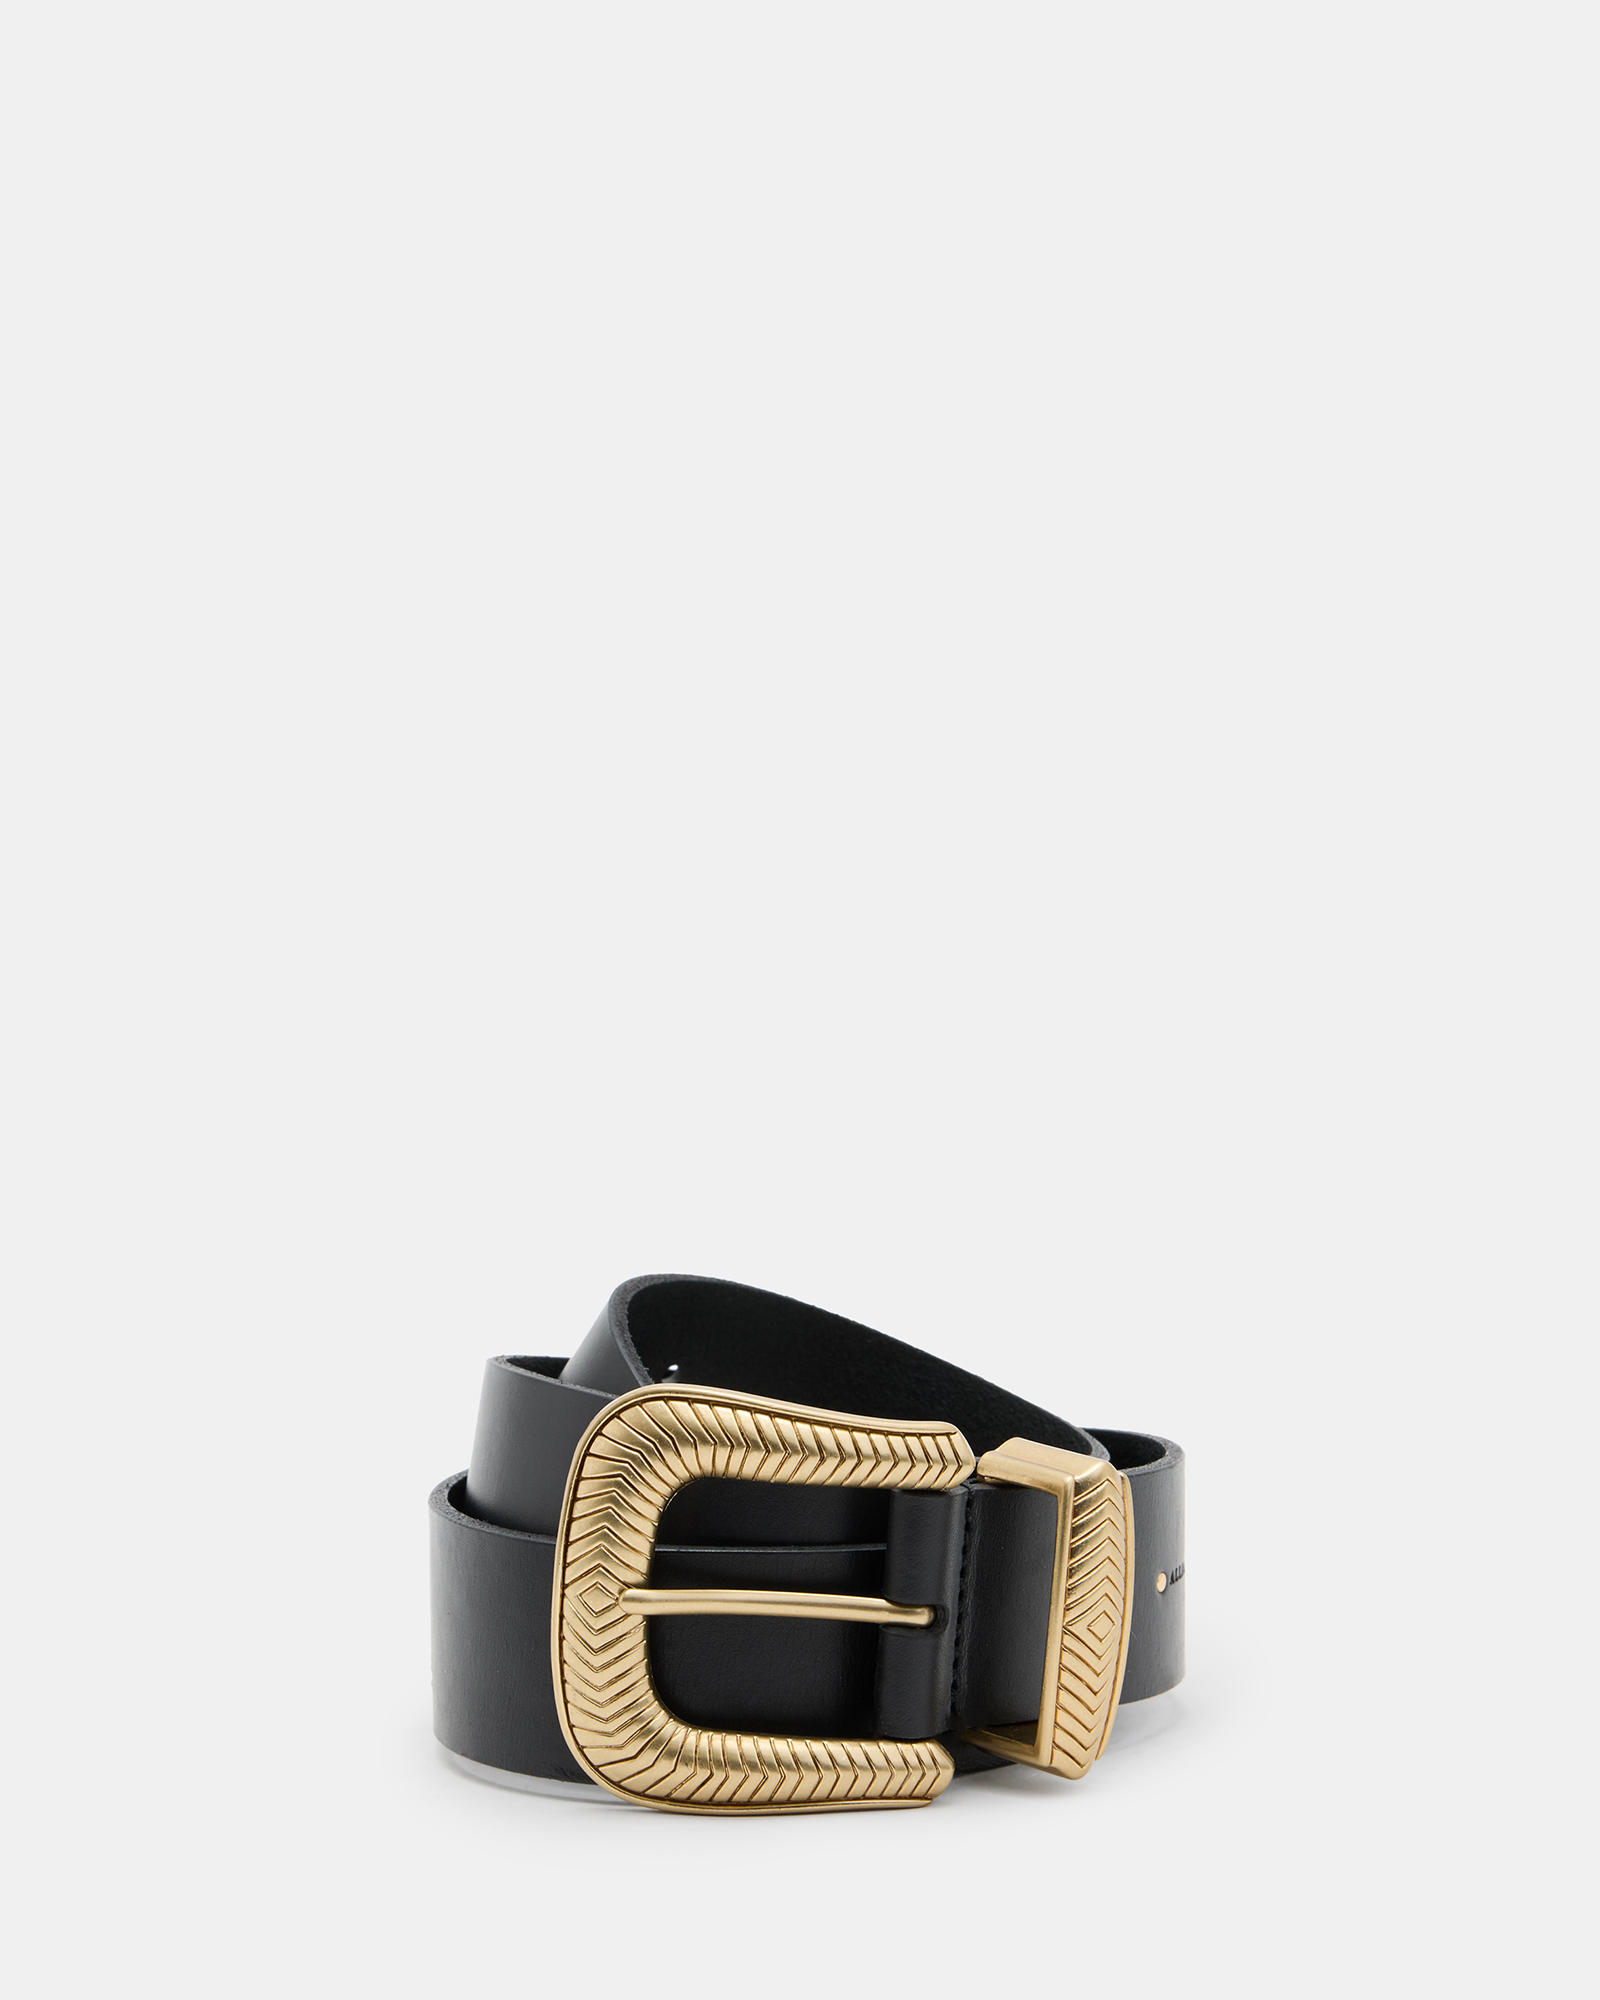 AllSaints Skylar Western Buckle Leather Belt,, BLACK/WARM BRASS